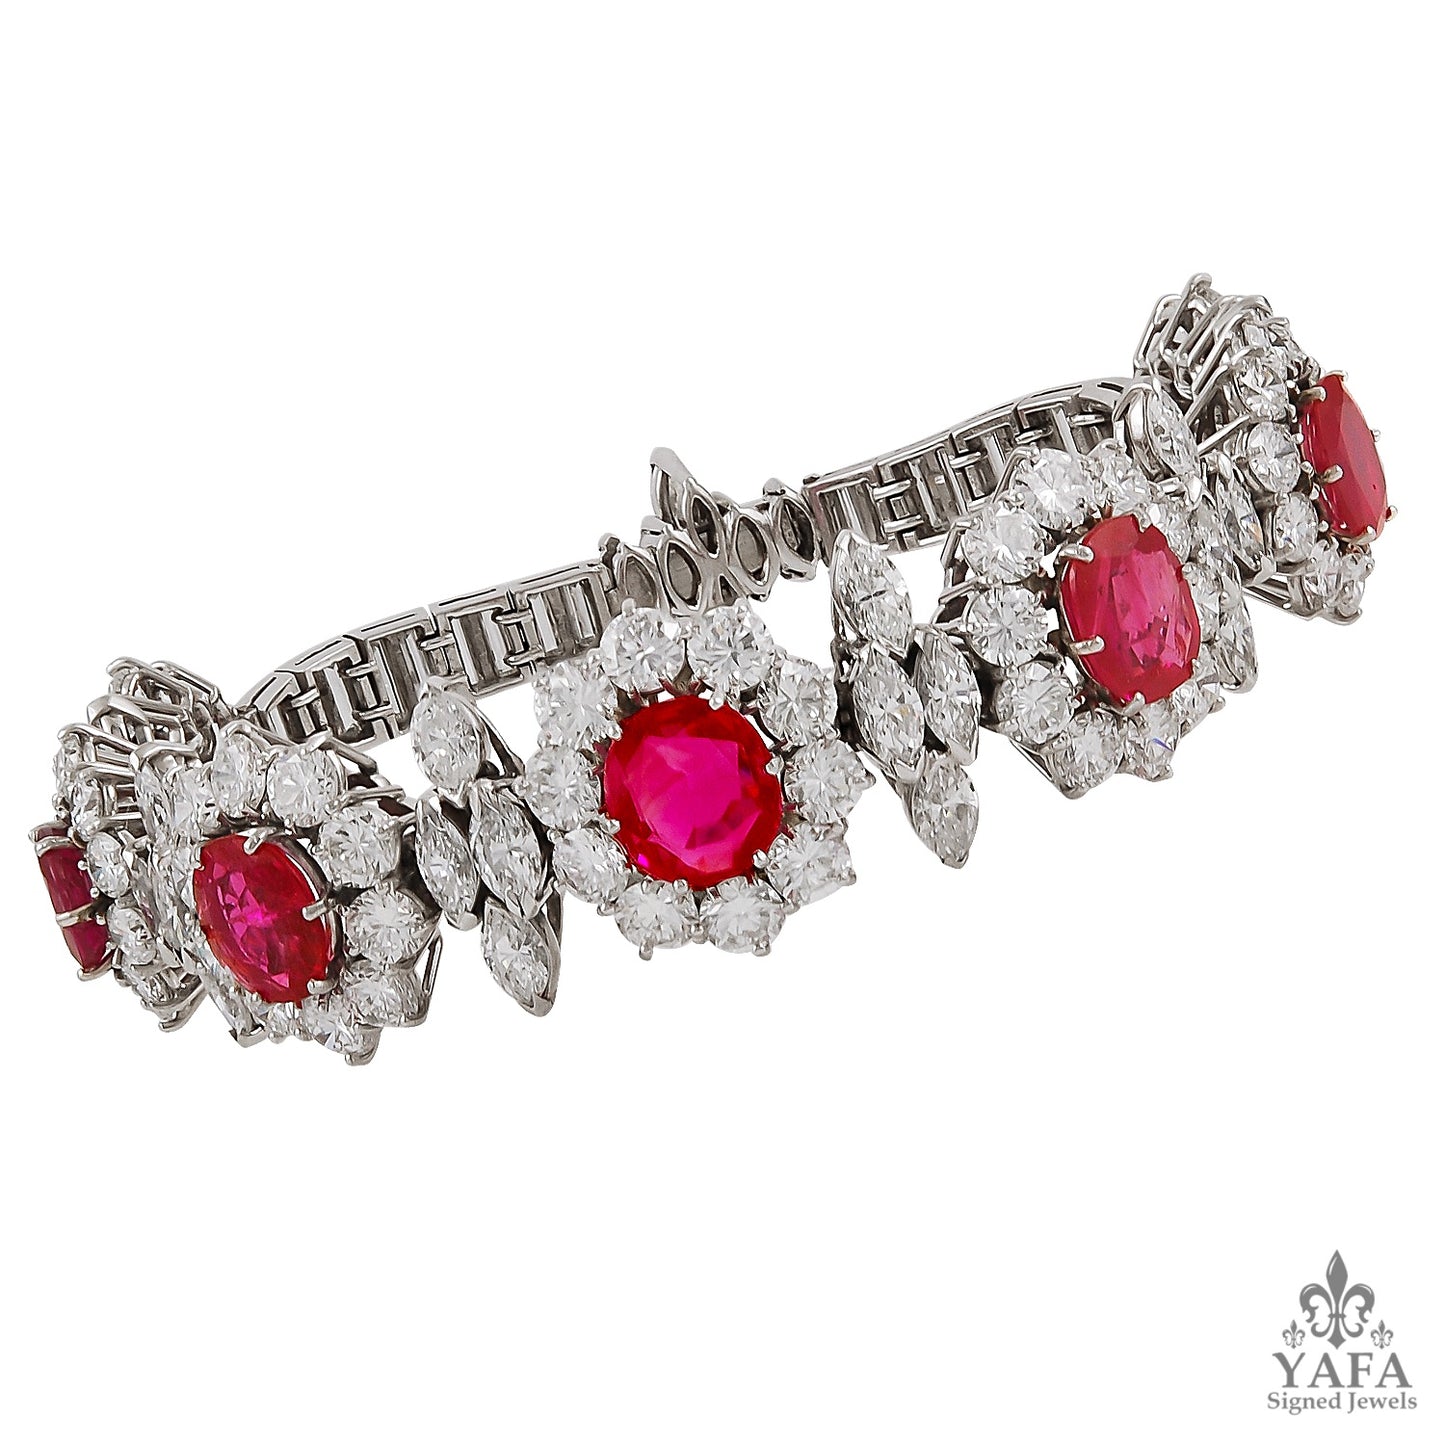 Circa 1960s Ruby and Diamond Bracelet